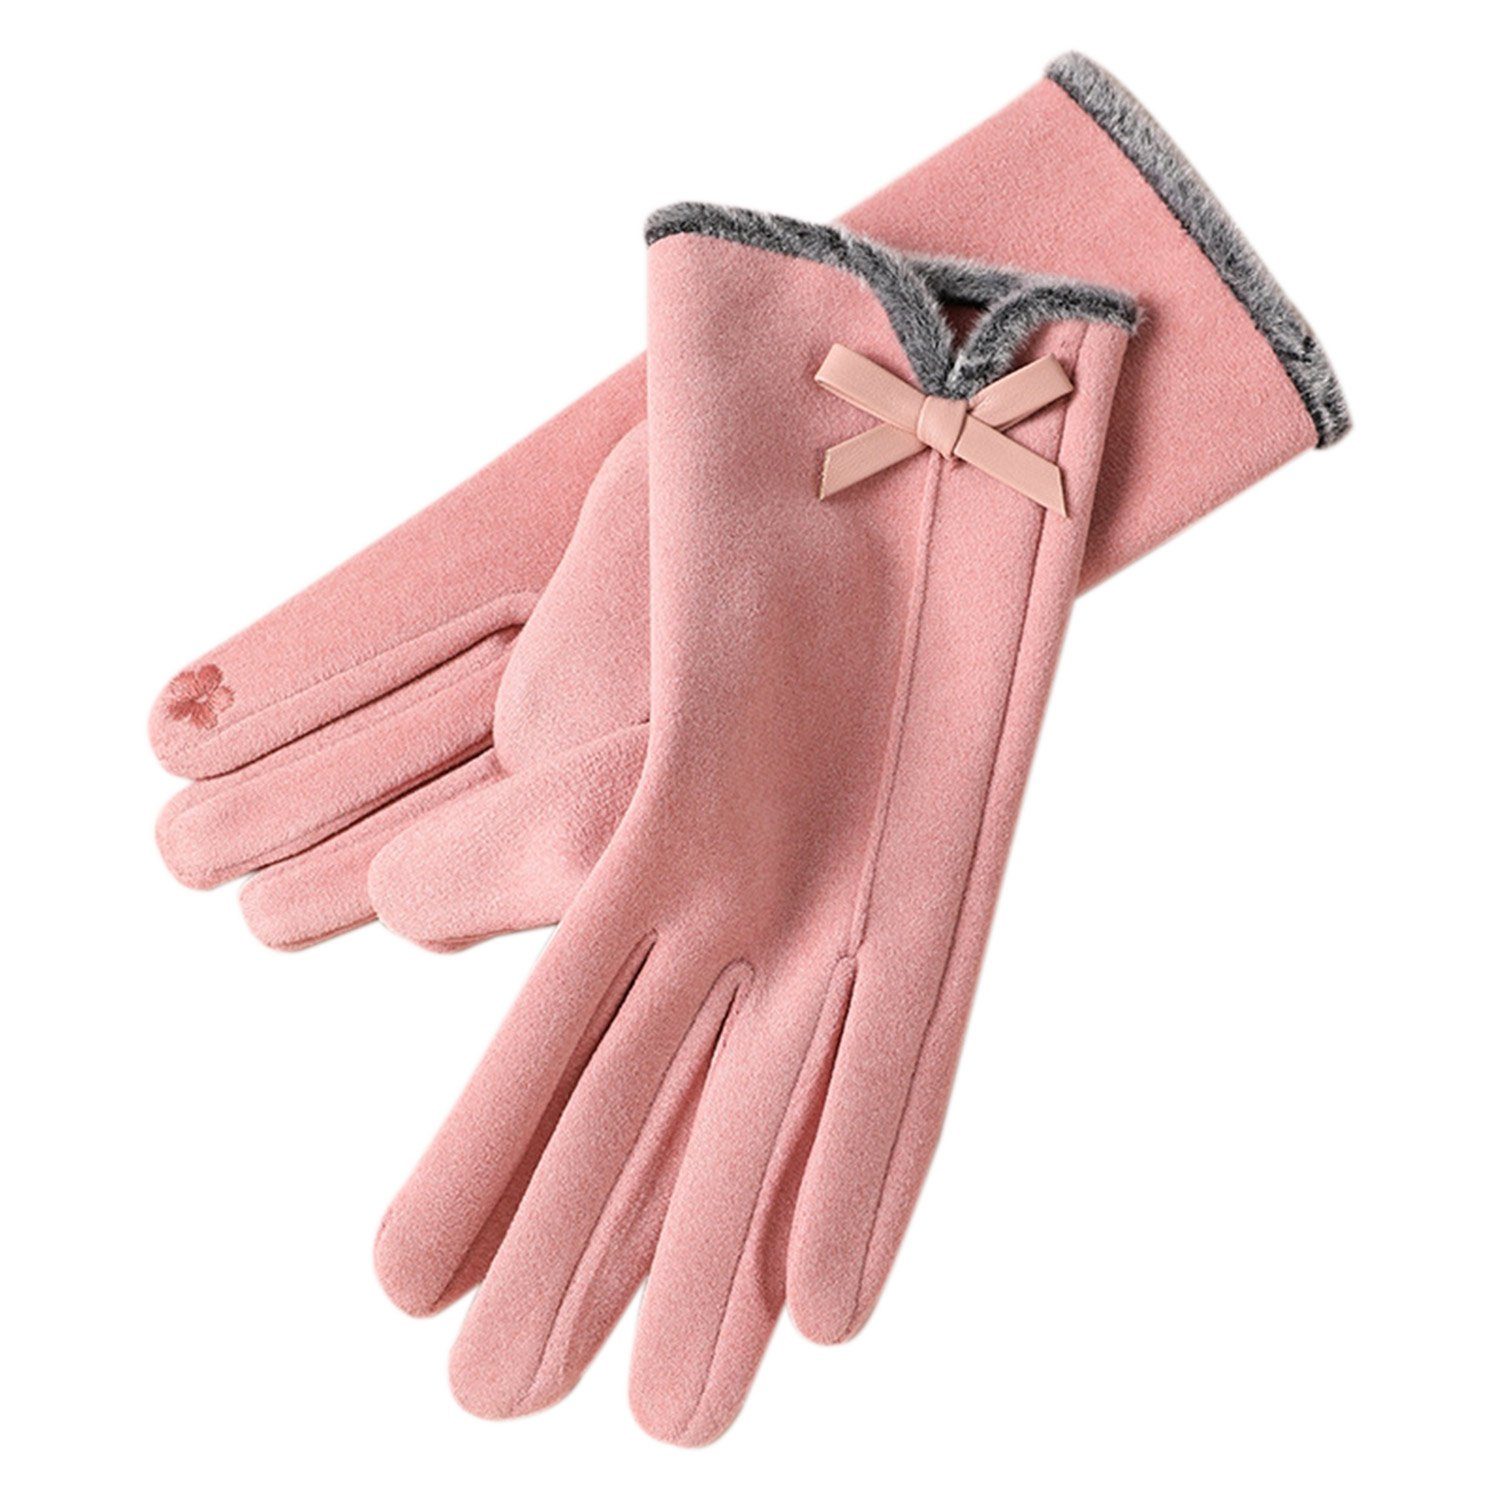 MAGICSHE Fleecehandschuhe Damen Winter Warme Touchscreen Handschuhe Rosa